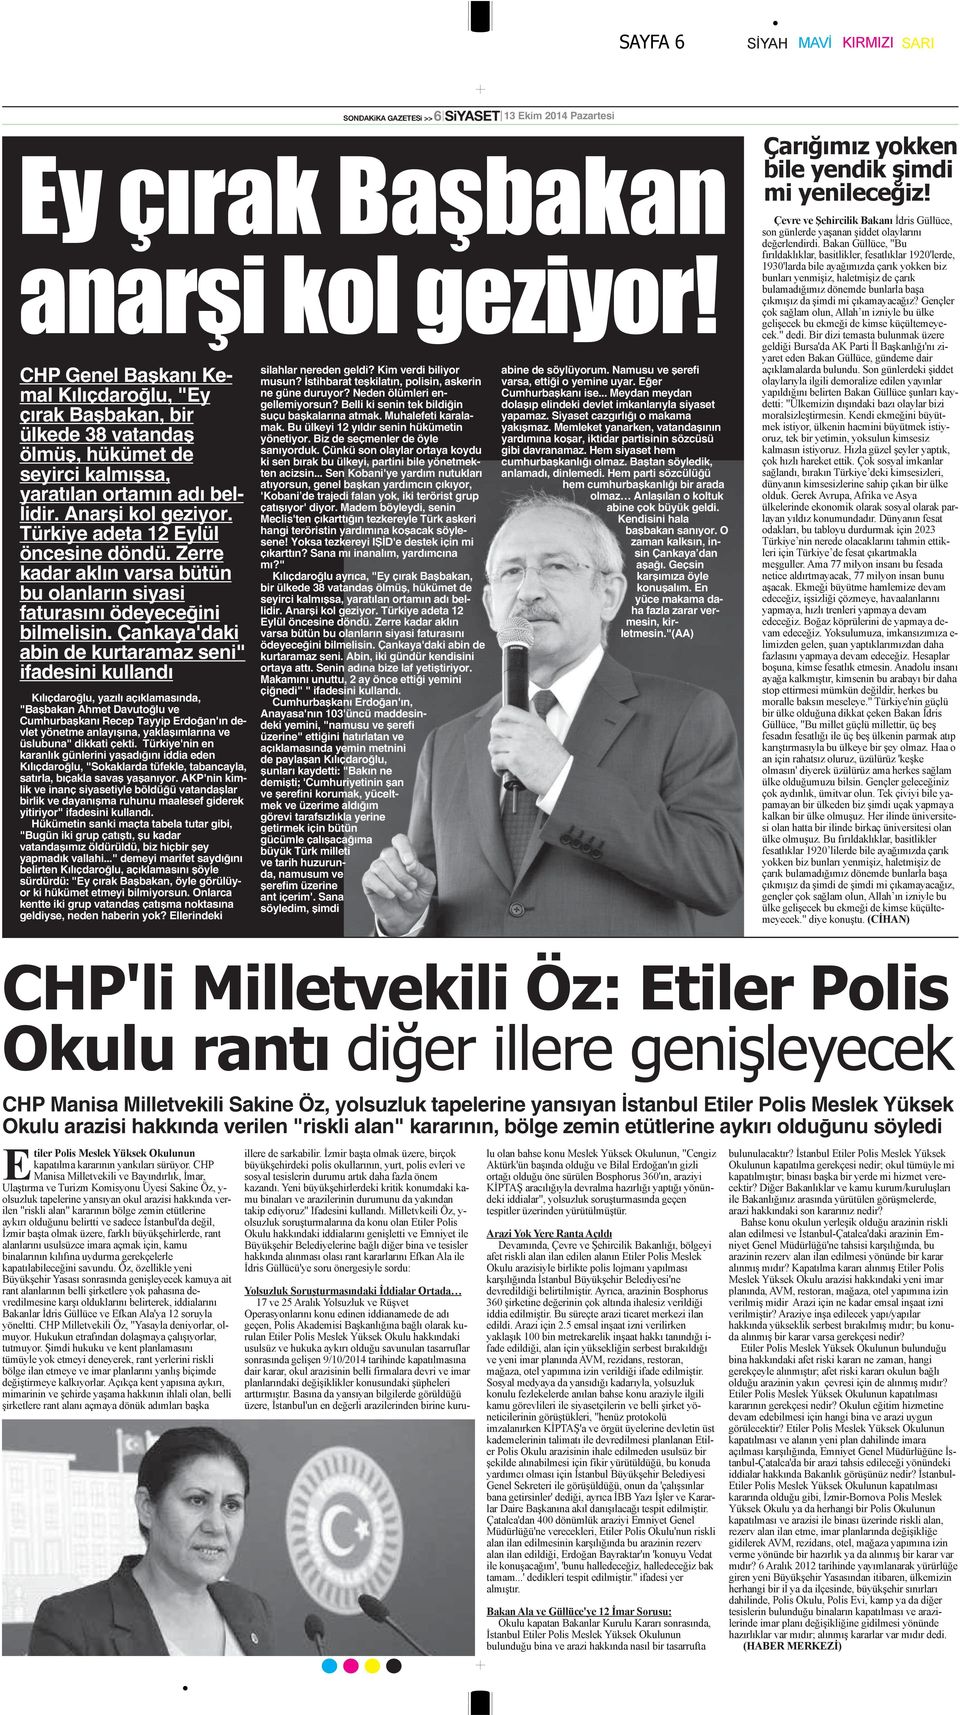 Çankaya'daki abin de kurtaramaz seni" ifadesini kullandı Kılıçdaroğlu, yazılı açıklamasında, "Başbakan Ahmet Davutoğlu ve Cumhurbaşkanı Recep Tayyip Erdoğan'ın devlet yönetme anlayışına,